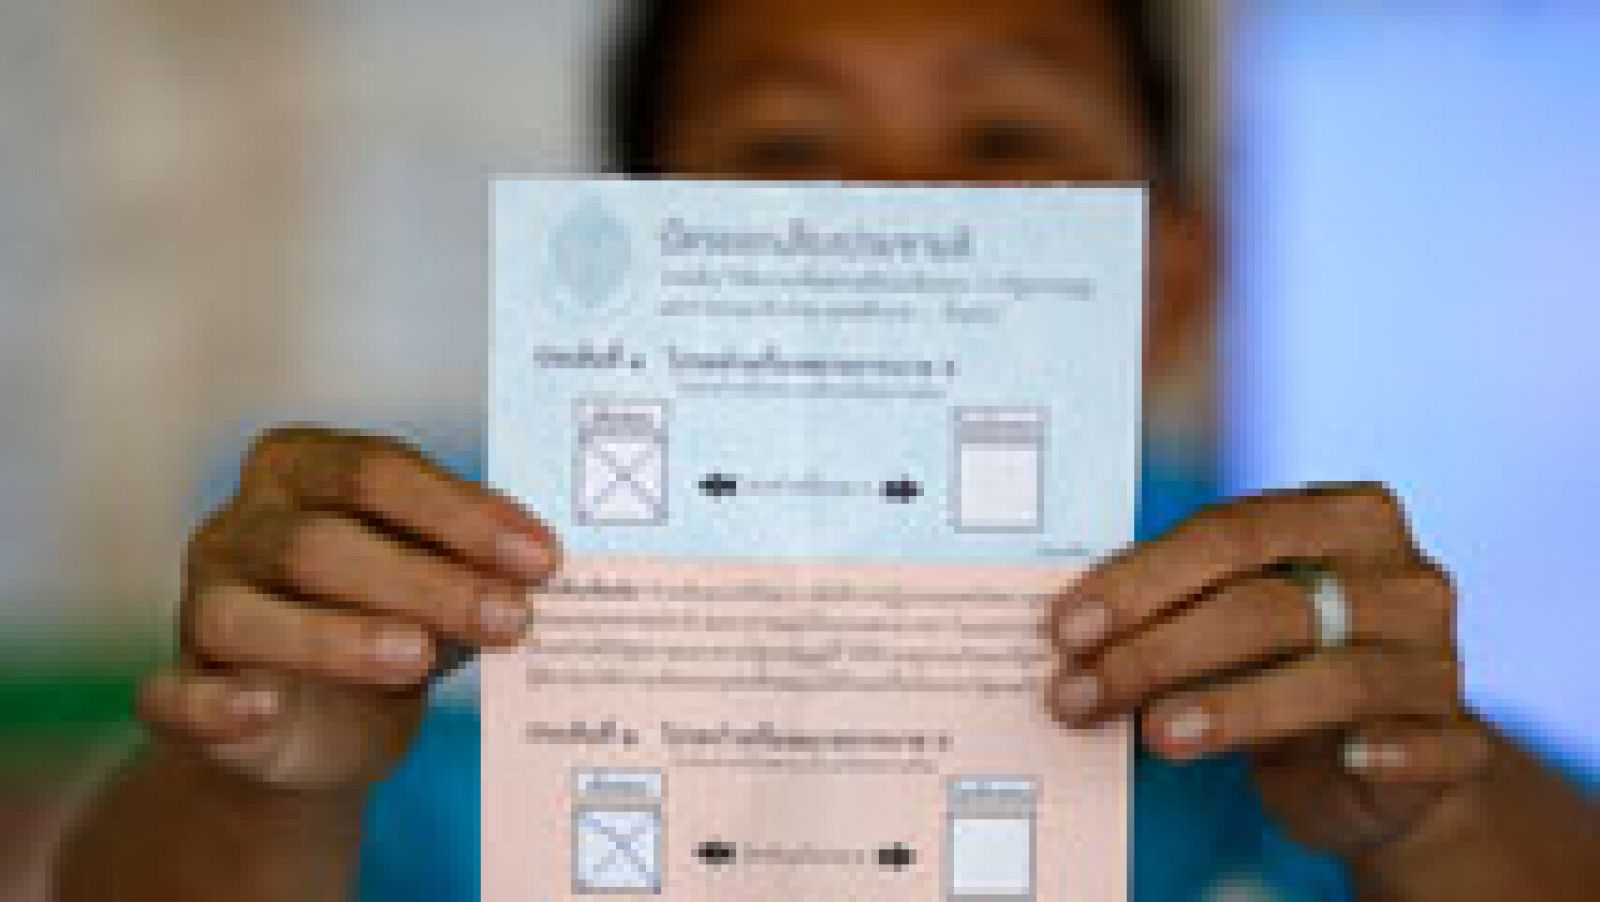 Tailandia tendrá nueva Constitución según el escrutinio avanzado del referéndum de hoy